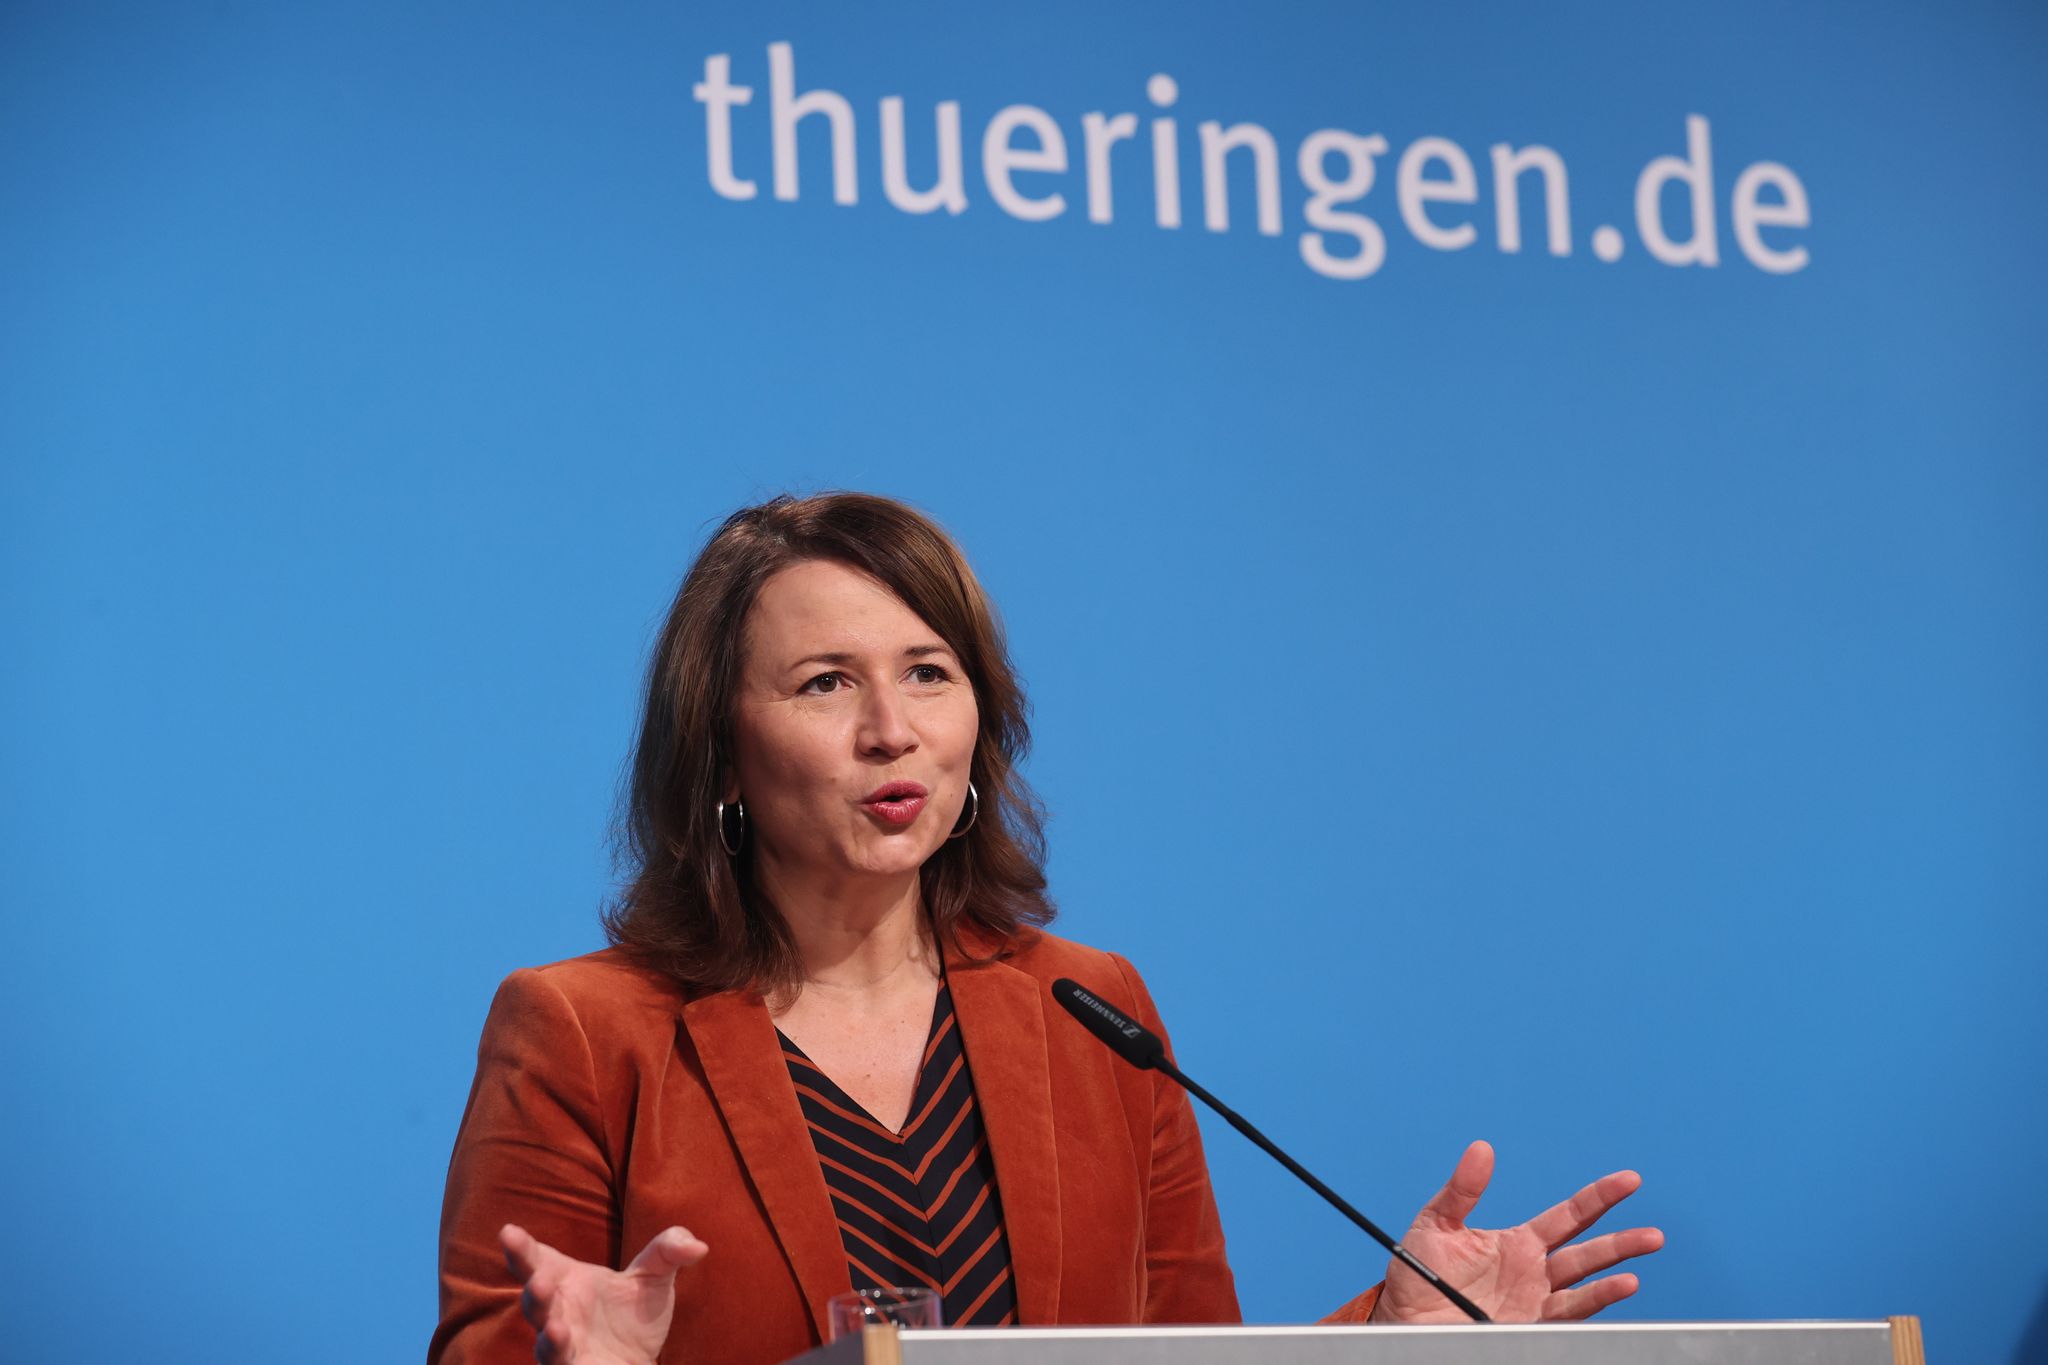 Thüringens Energieministerin Anja Siegesmund spricht bei einer Regierungs-Pressekonferenz.